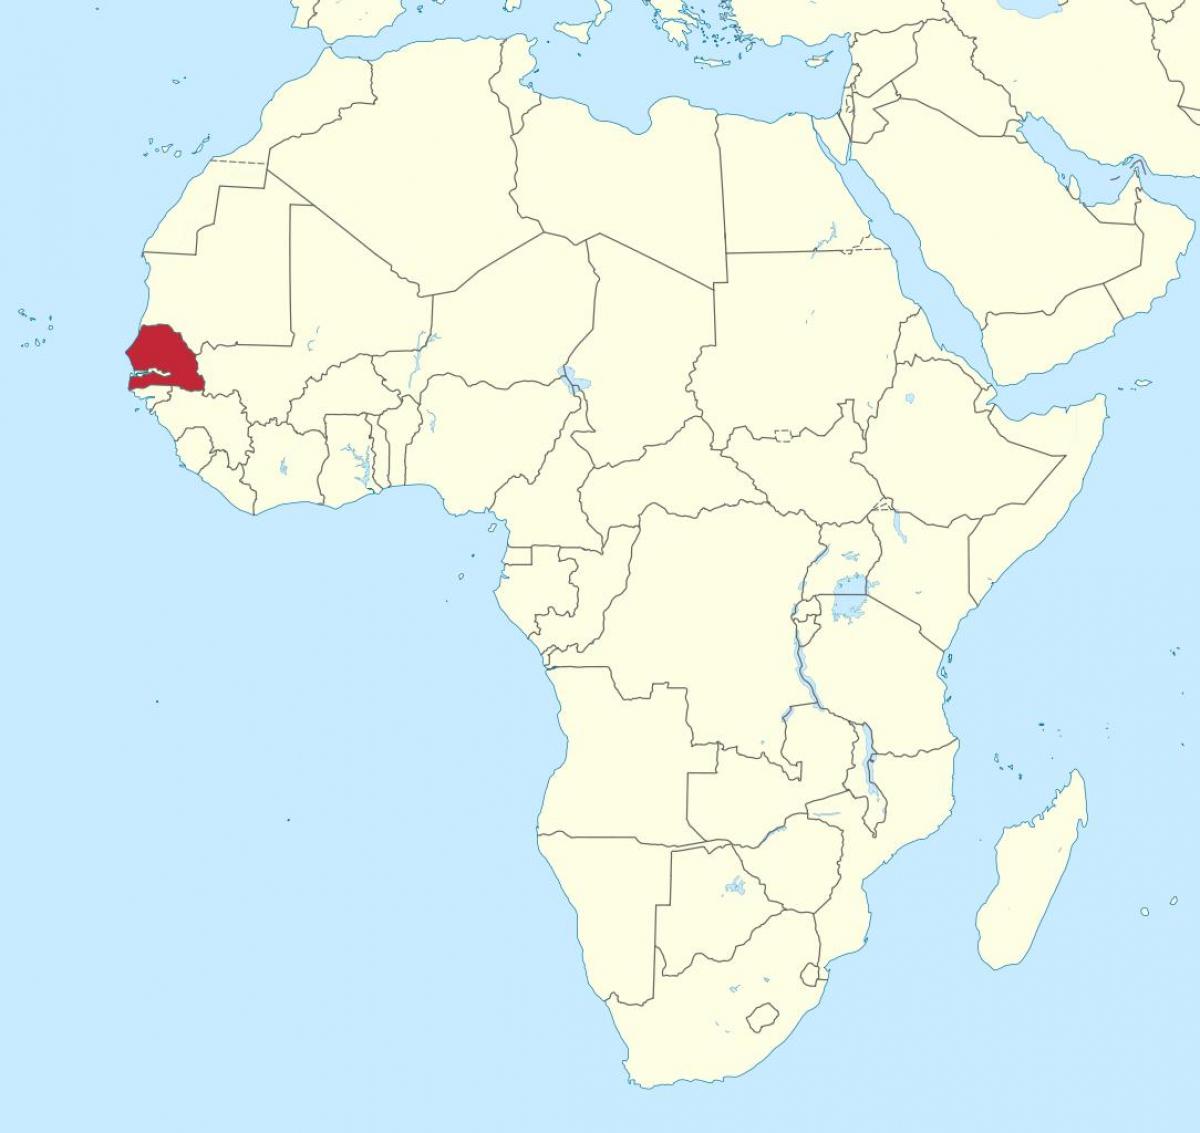 Senegalin ja afrikan kartta - Senegal on afrikan kartan (Länsi-Afrikka -  Afrikka)